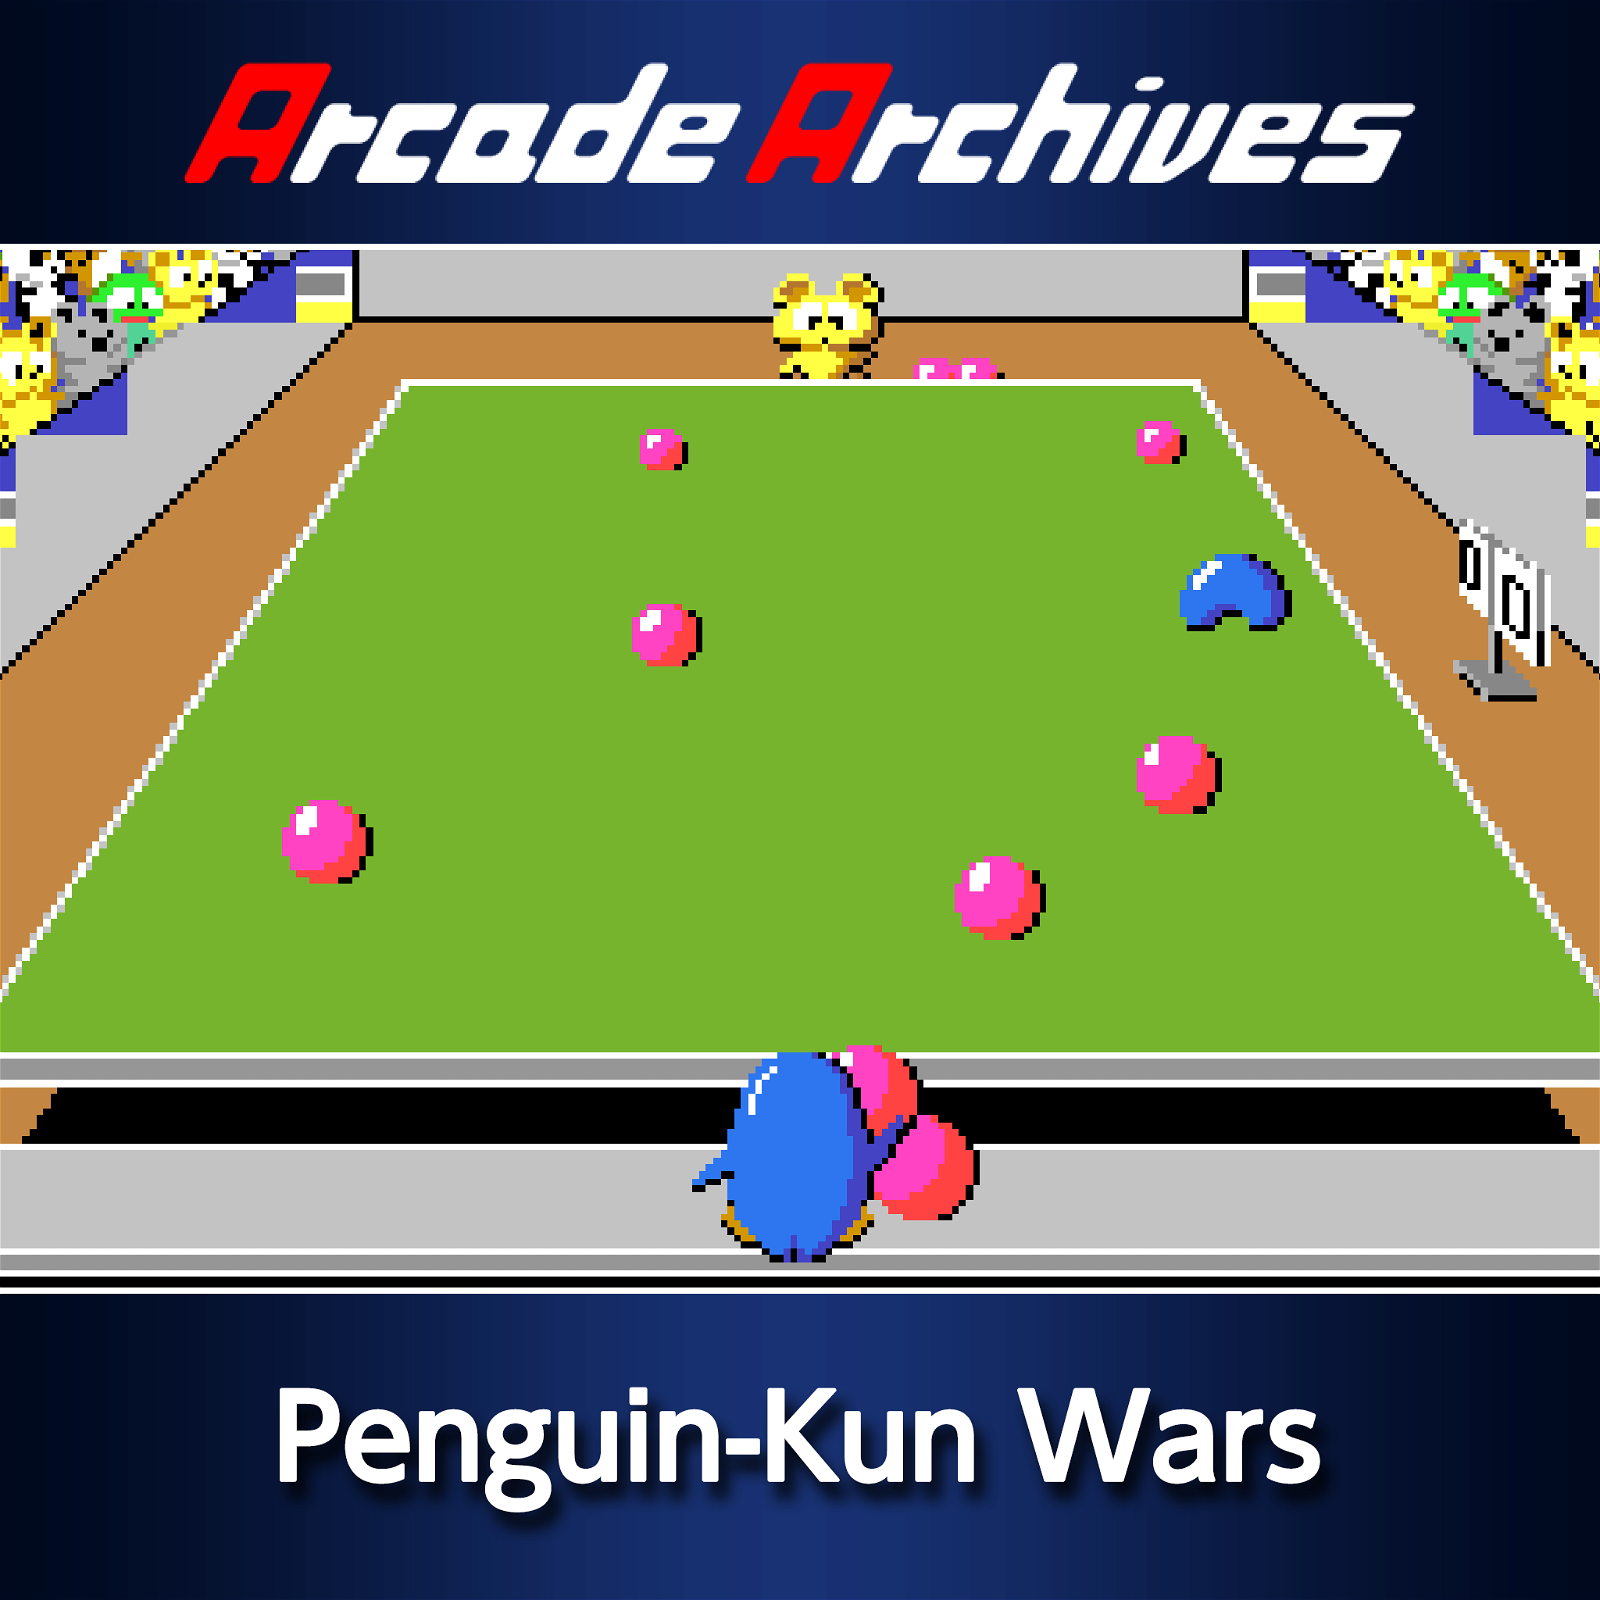 Image of Arcade Archives Penguin-Kun Wars